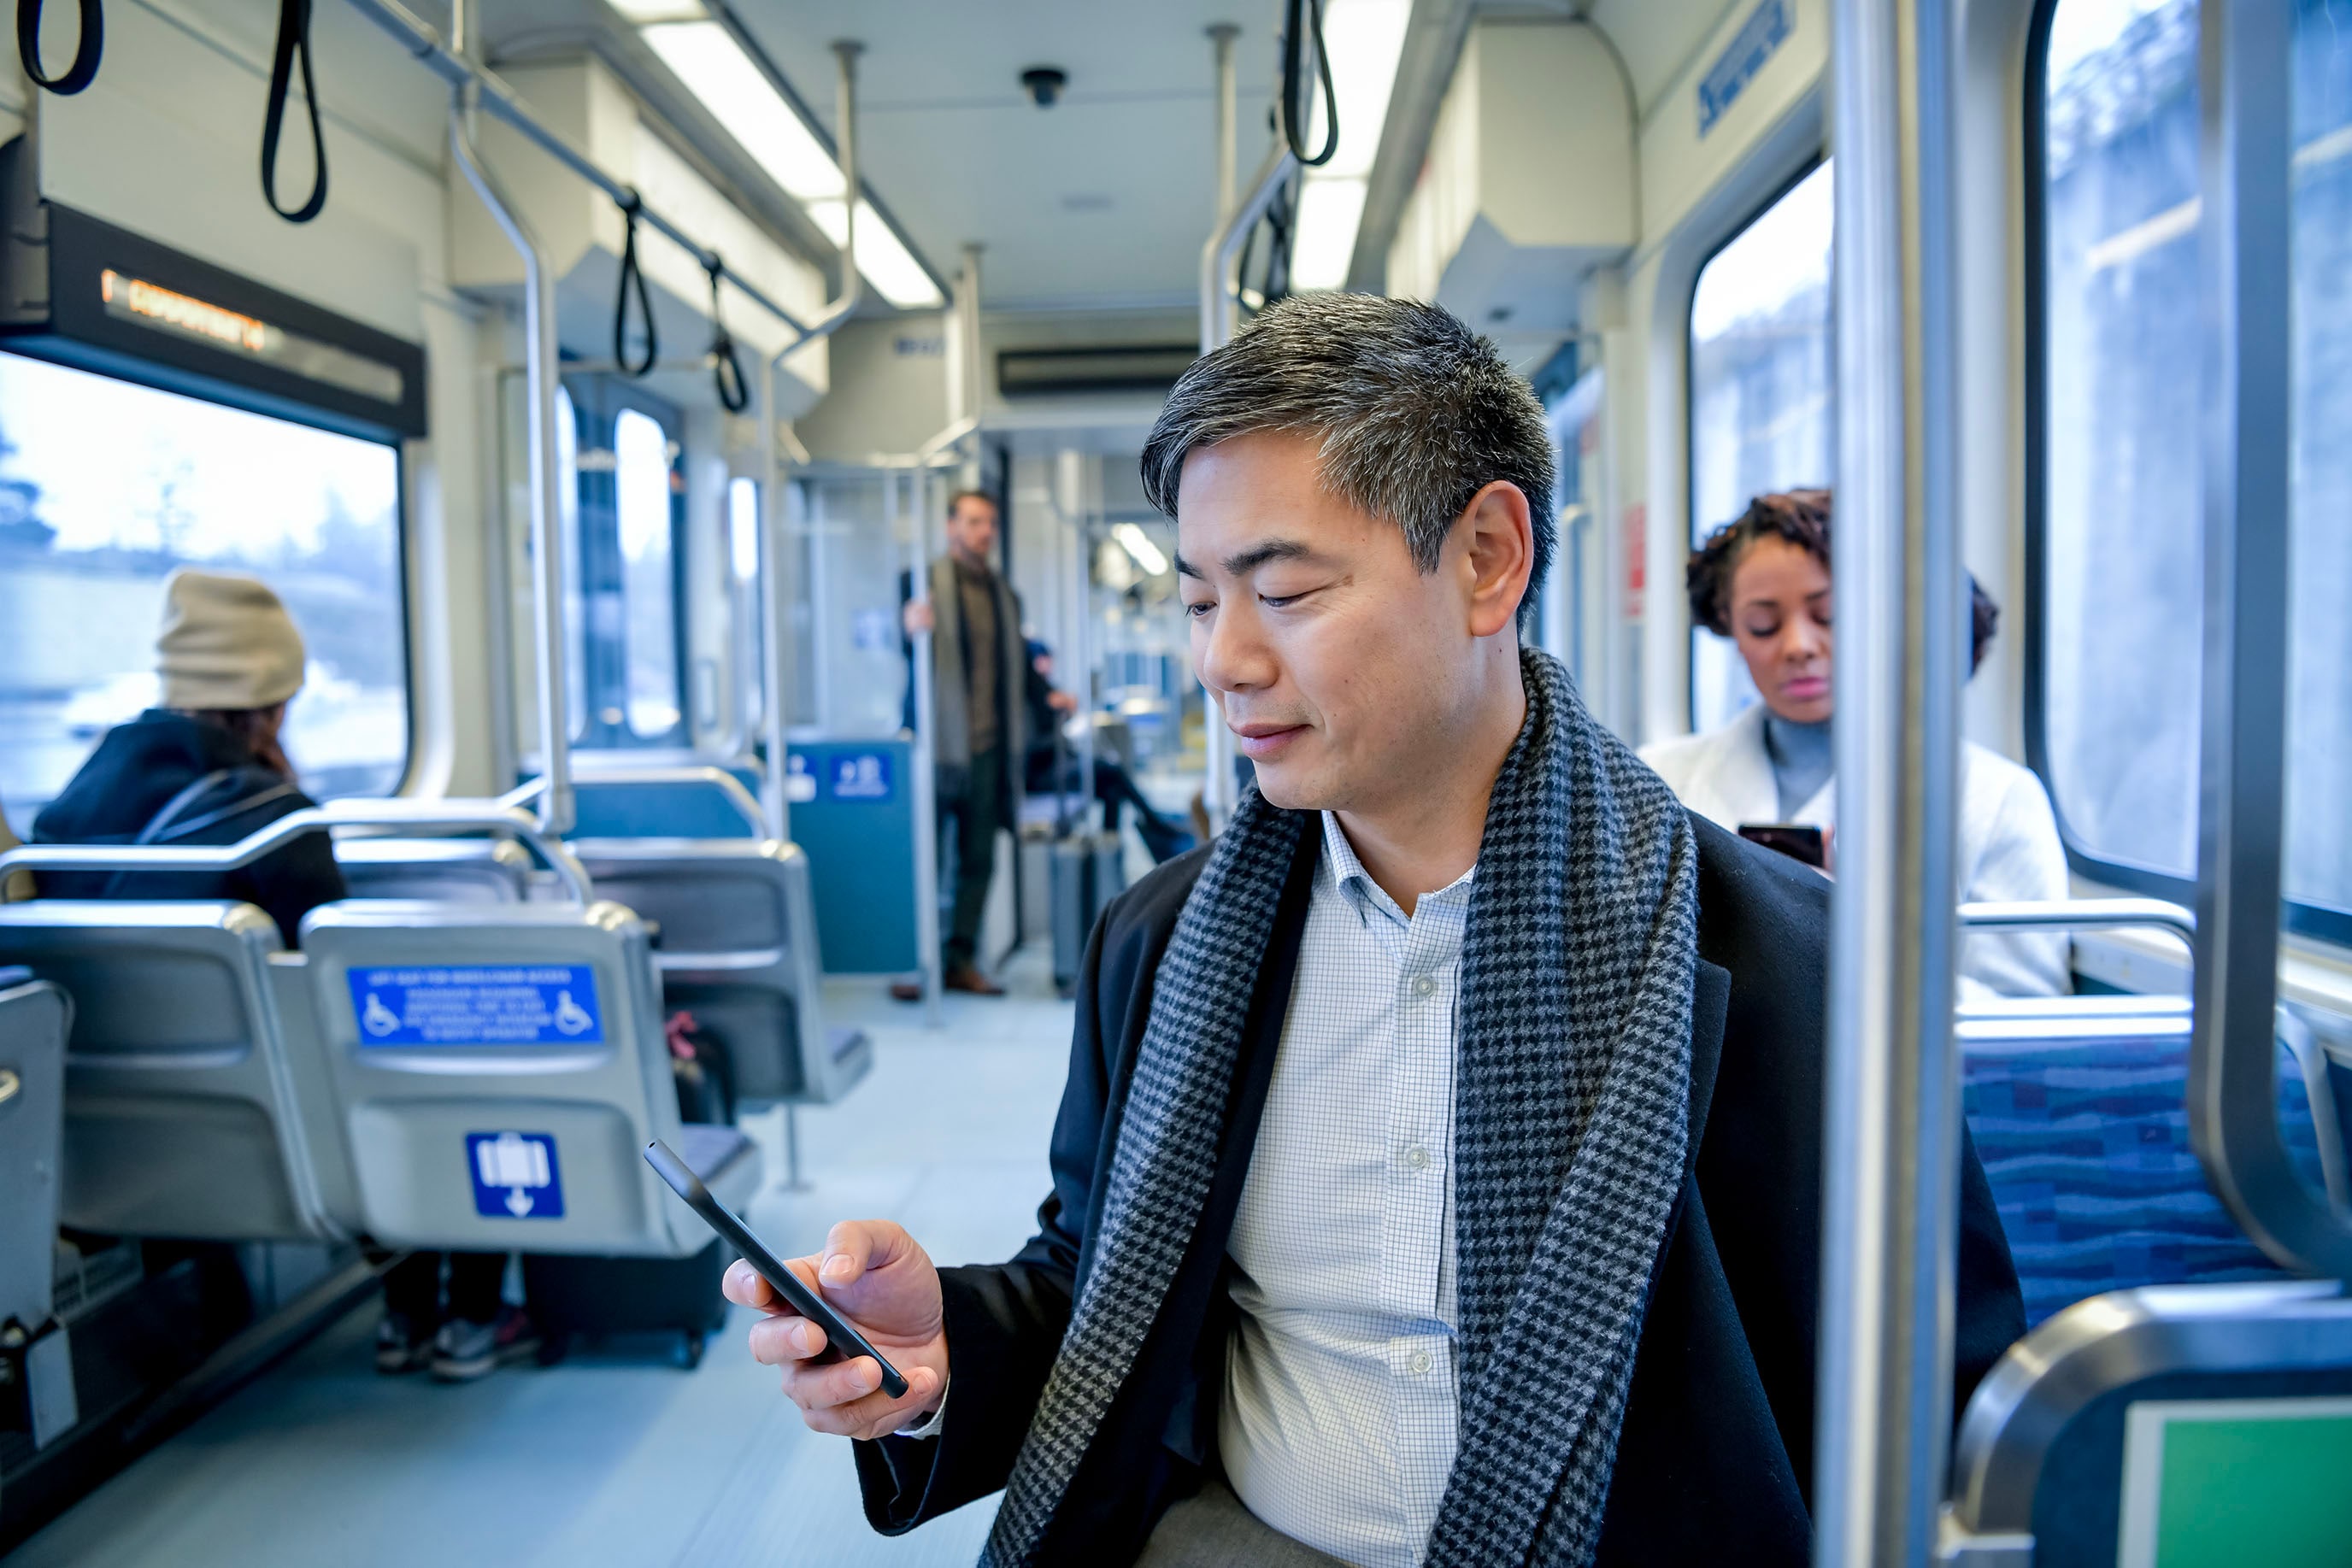 Man riding the subway looking at his phone